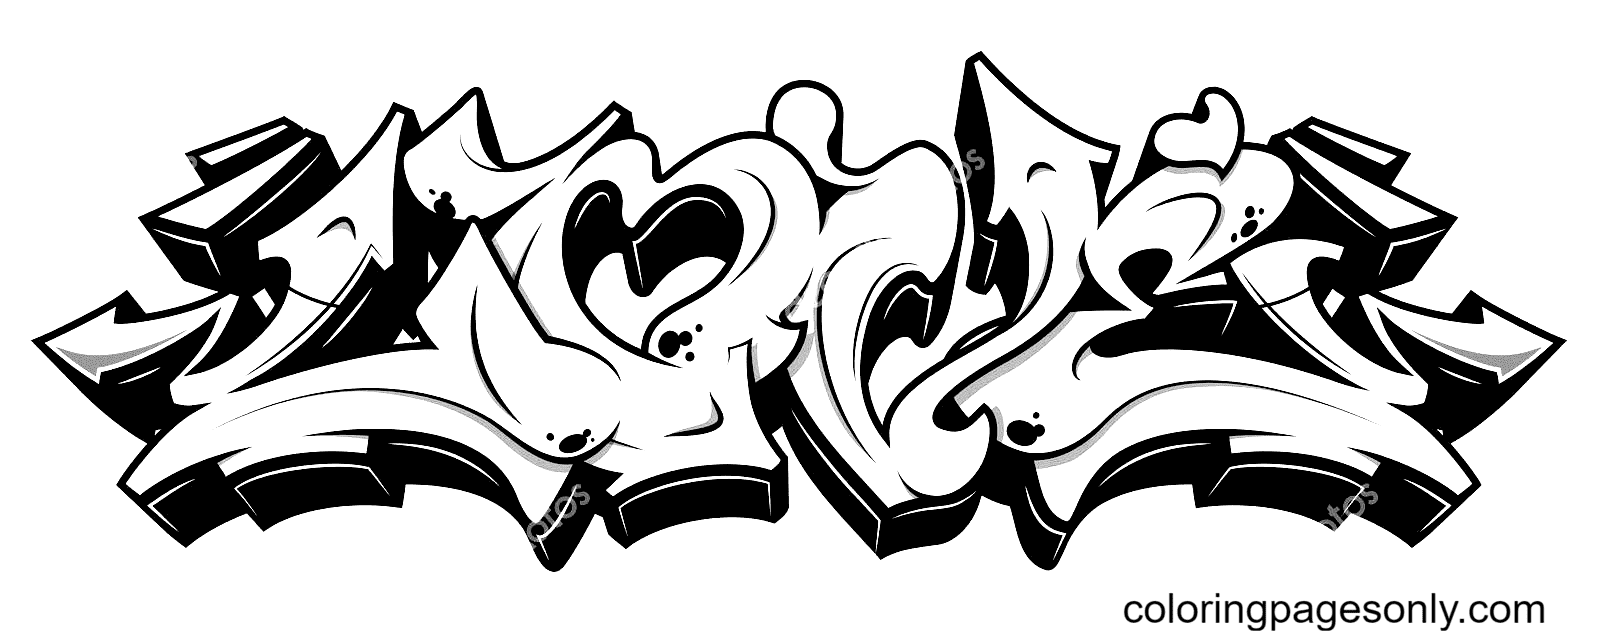 Liebe im Graffiti-Stil von Graffiti